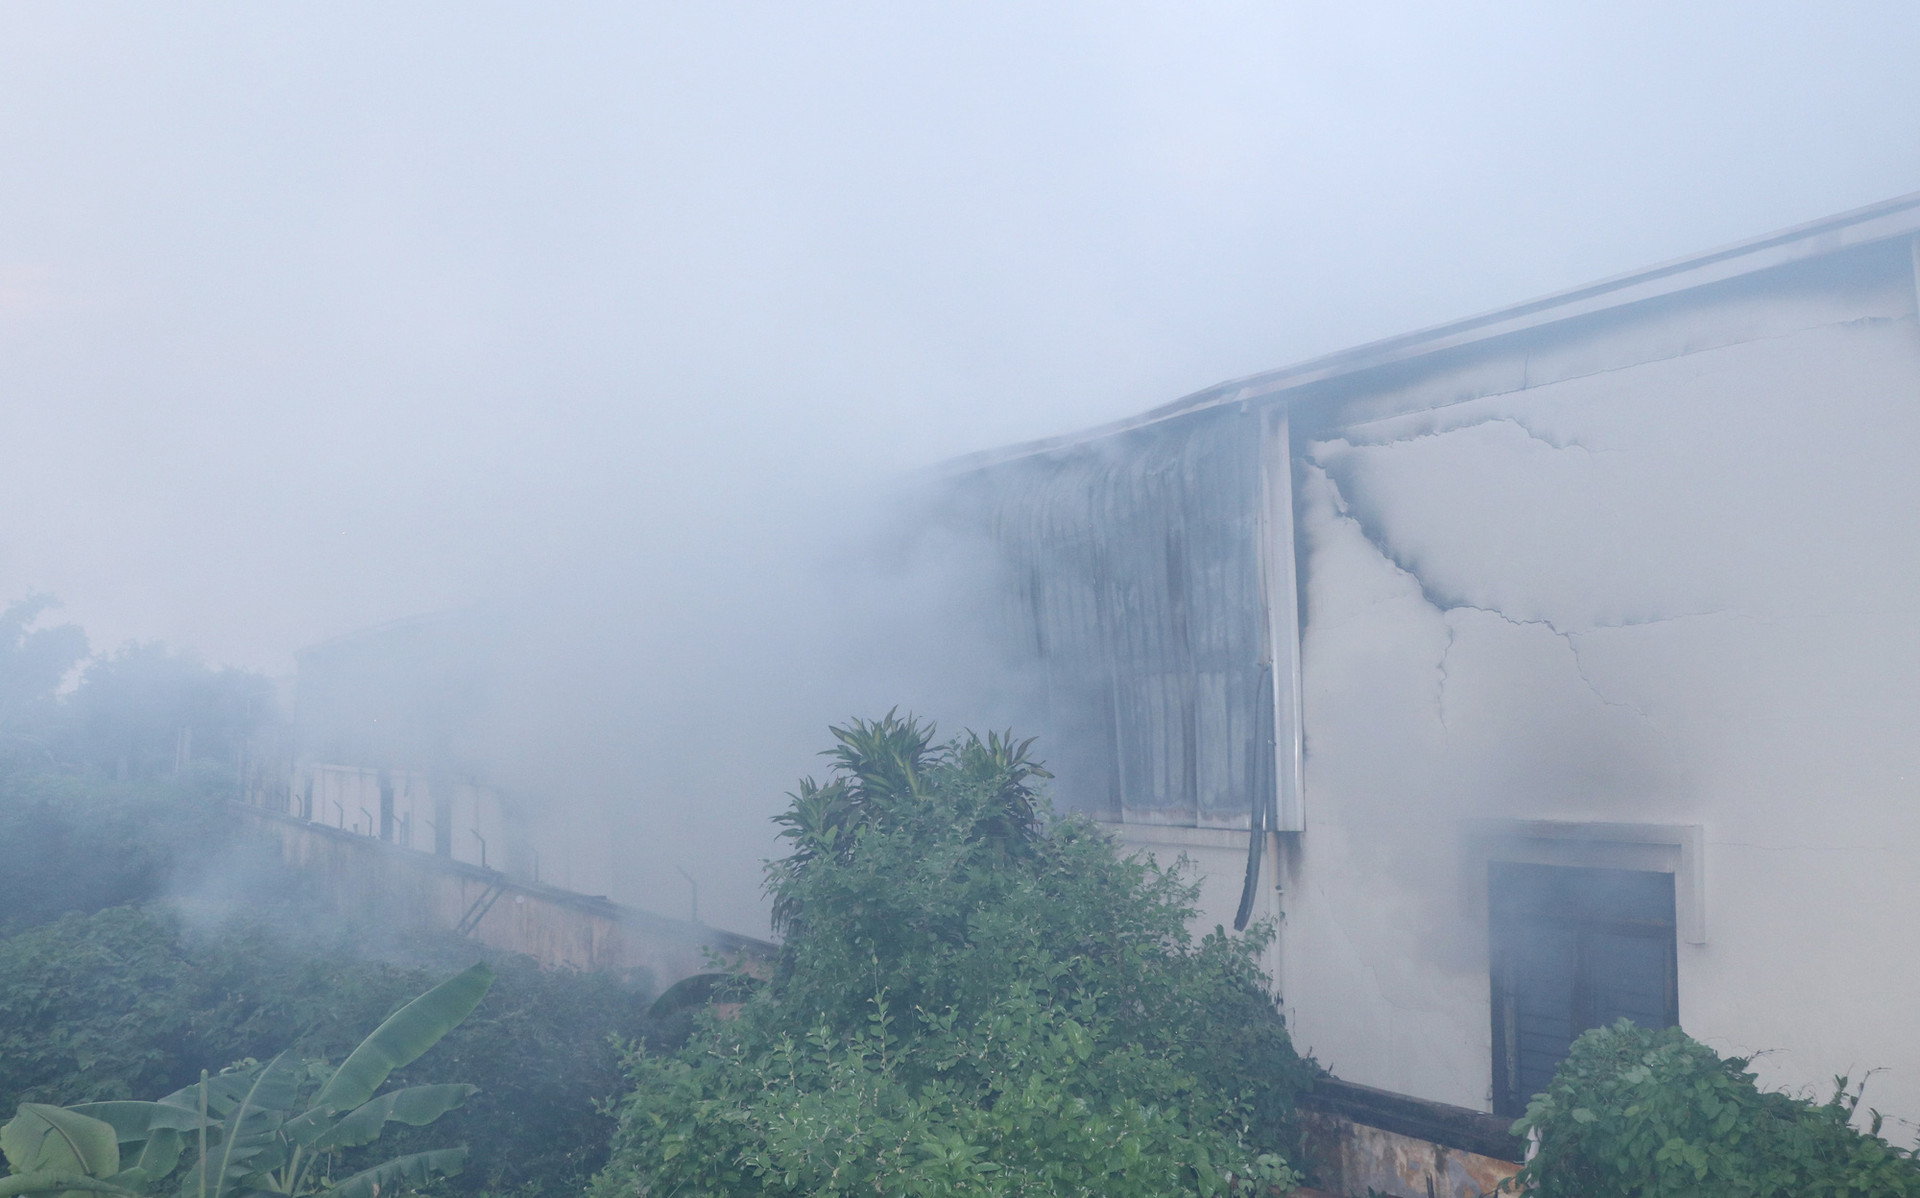 Cháy lớn tại Khu công nghiệp Hòa Xá, gần 1.000 m2 nhà xưởng bị thiệt hại nặng - Ảnh 1.